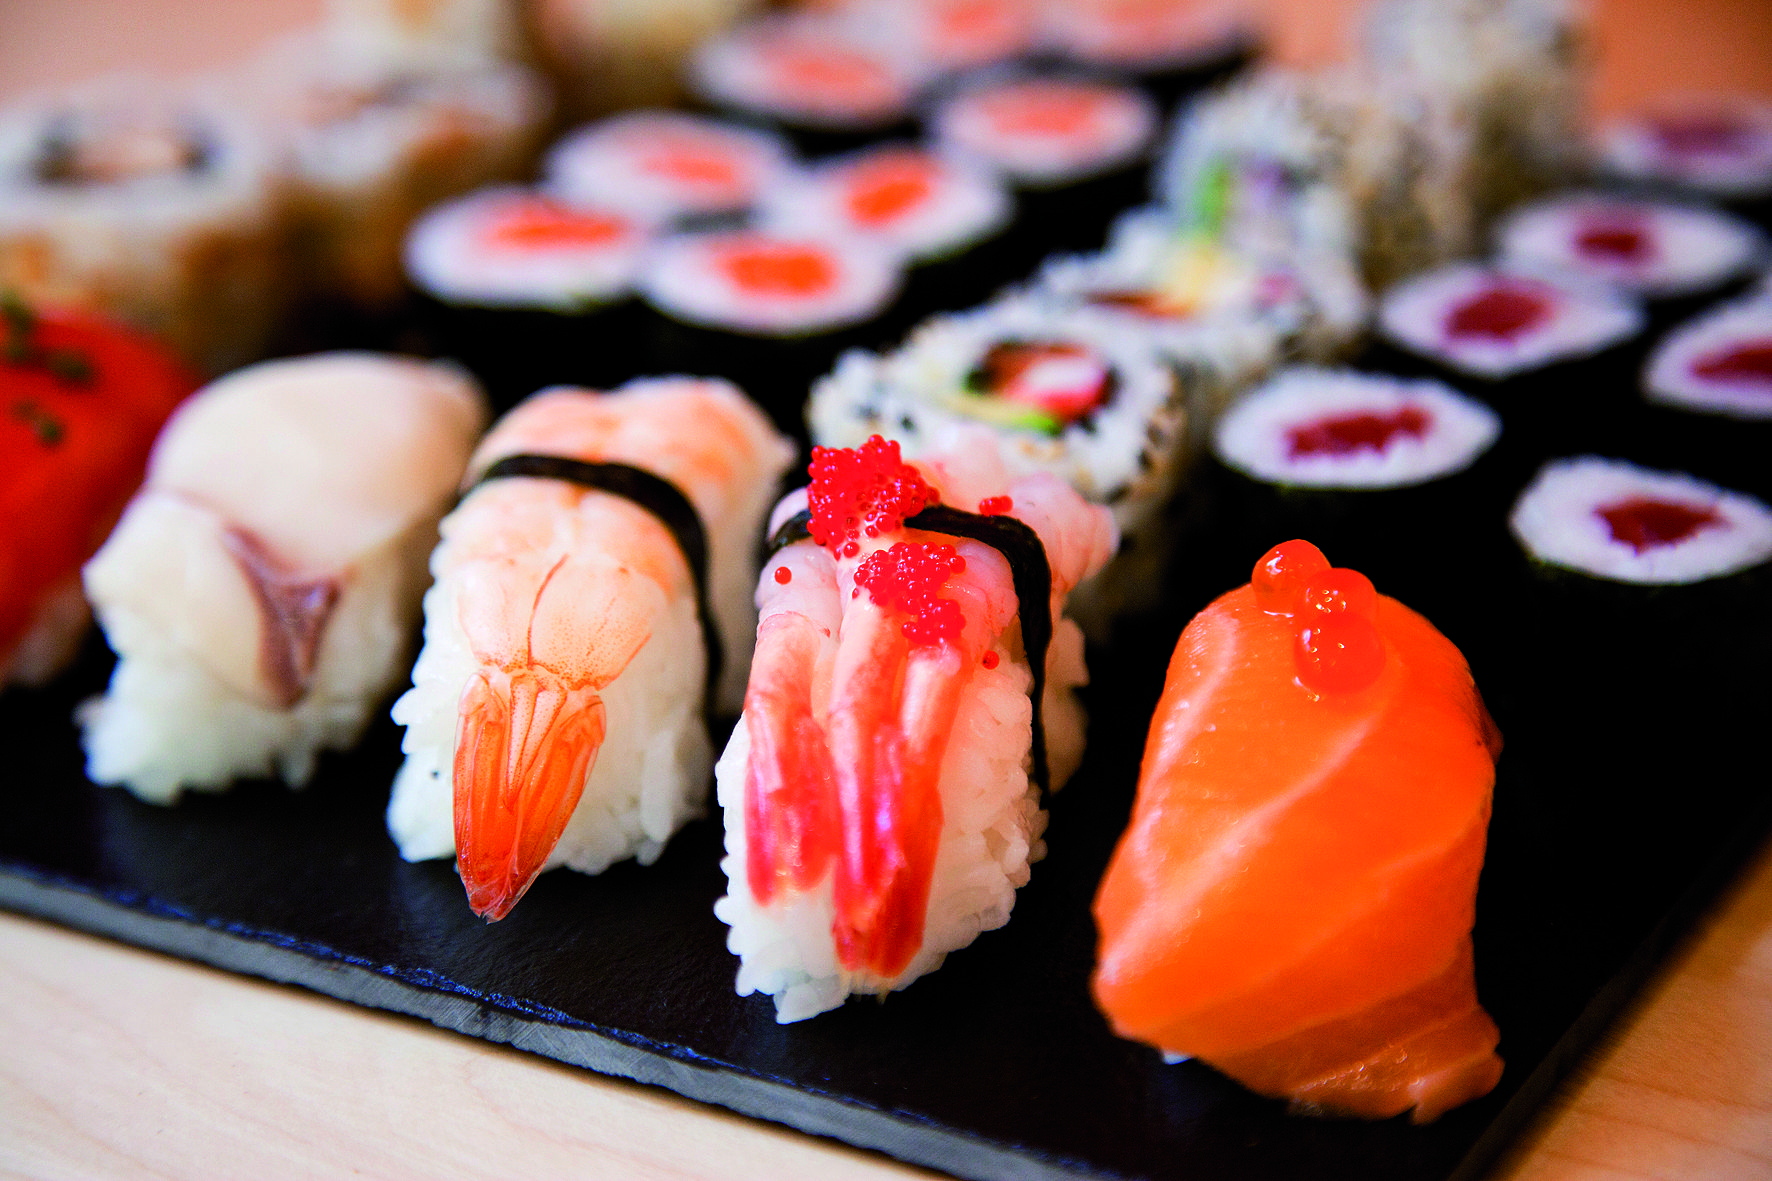 A Oishi combinen productes de la cuina mediterrània amb la cuina japonesa. FOTO: Lali Puig 